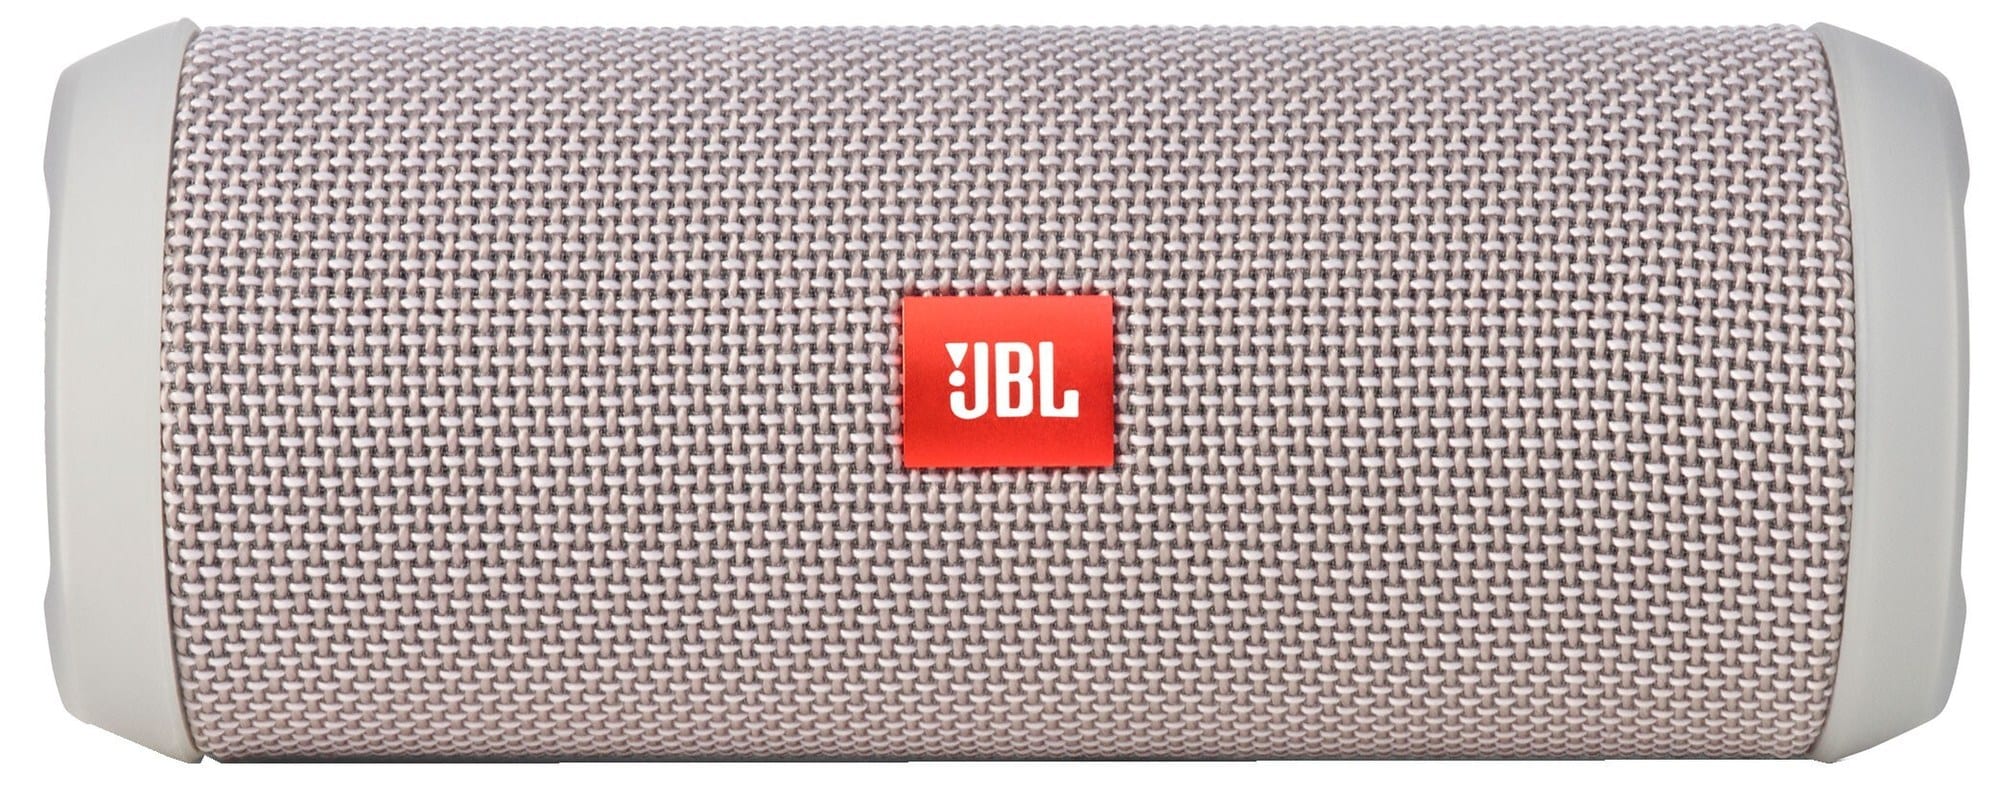 JBL Flip 3 trådløs høyttaler (grå) - Høyttalere - Elkjøp